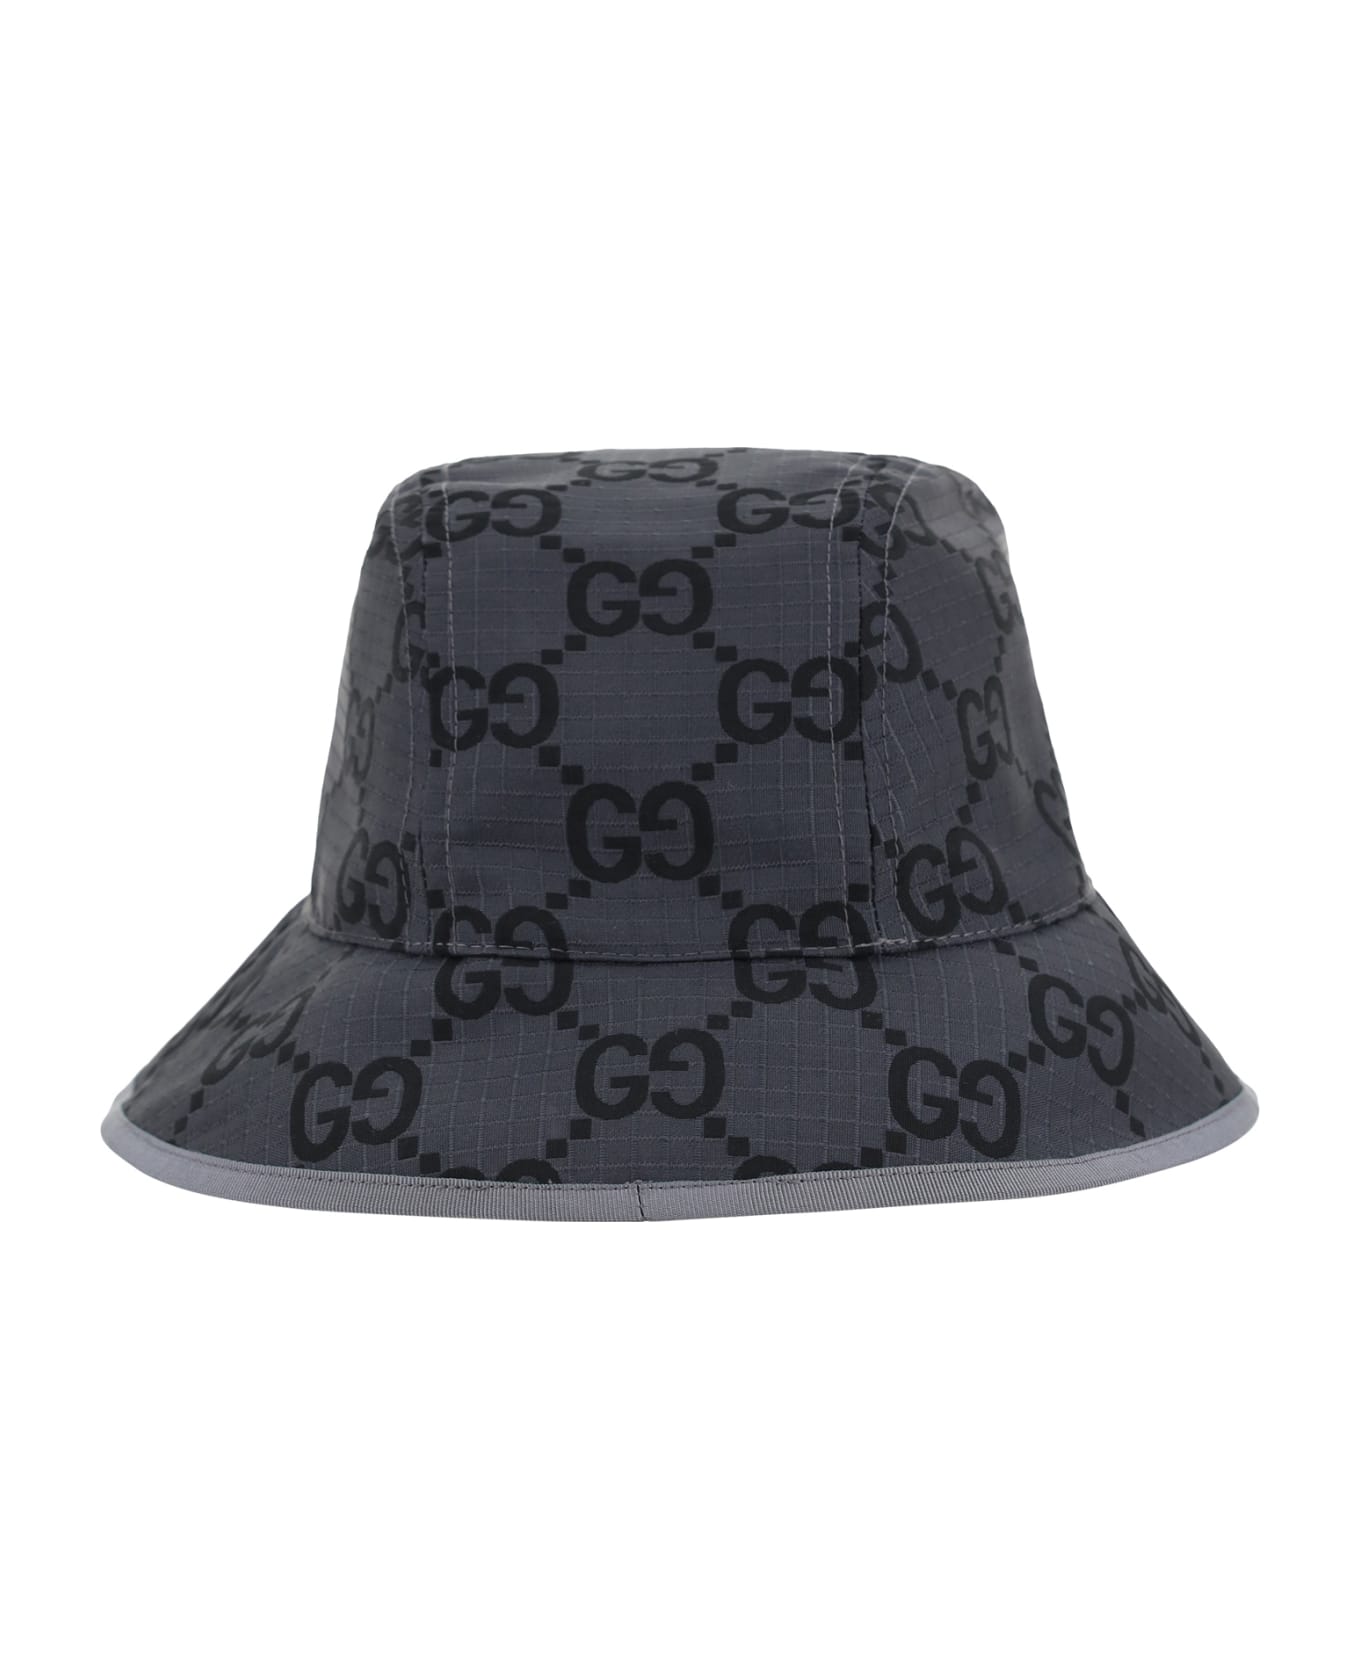 Gucci Bucket Hat - Grey/black